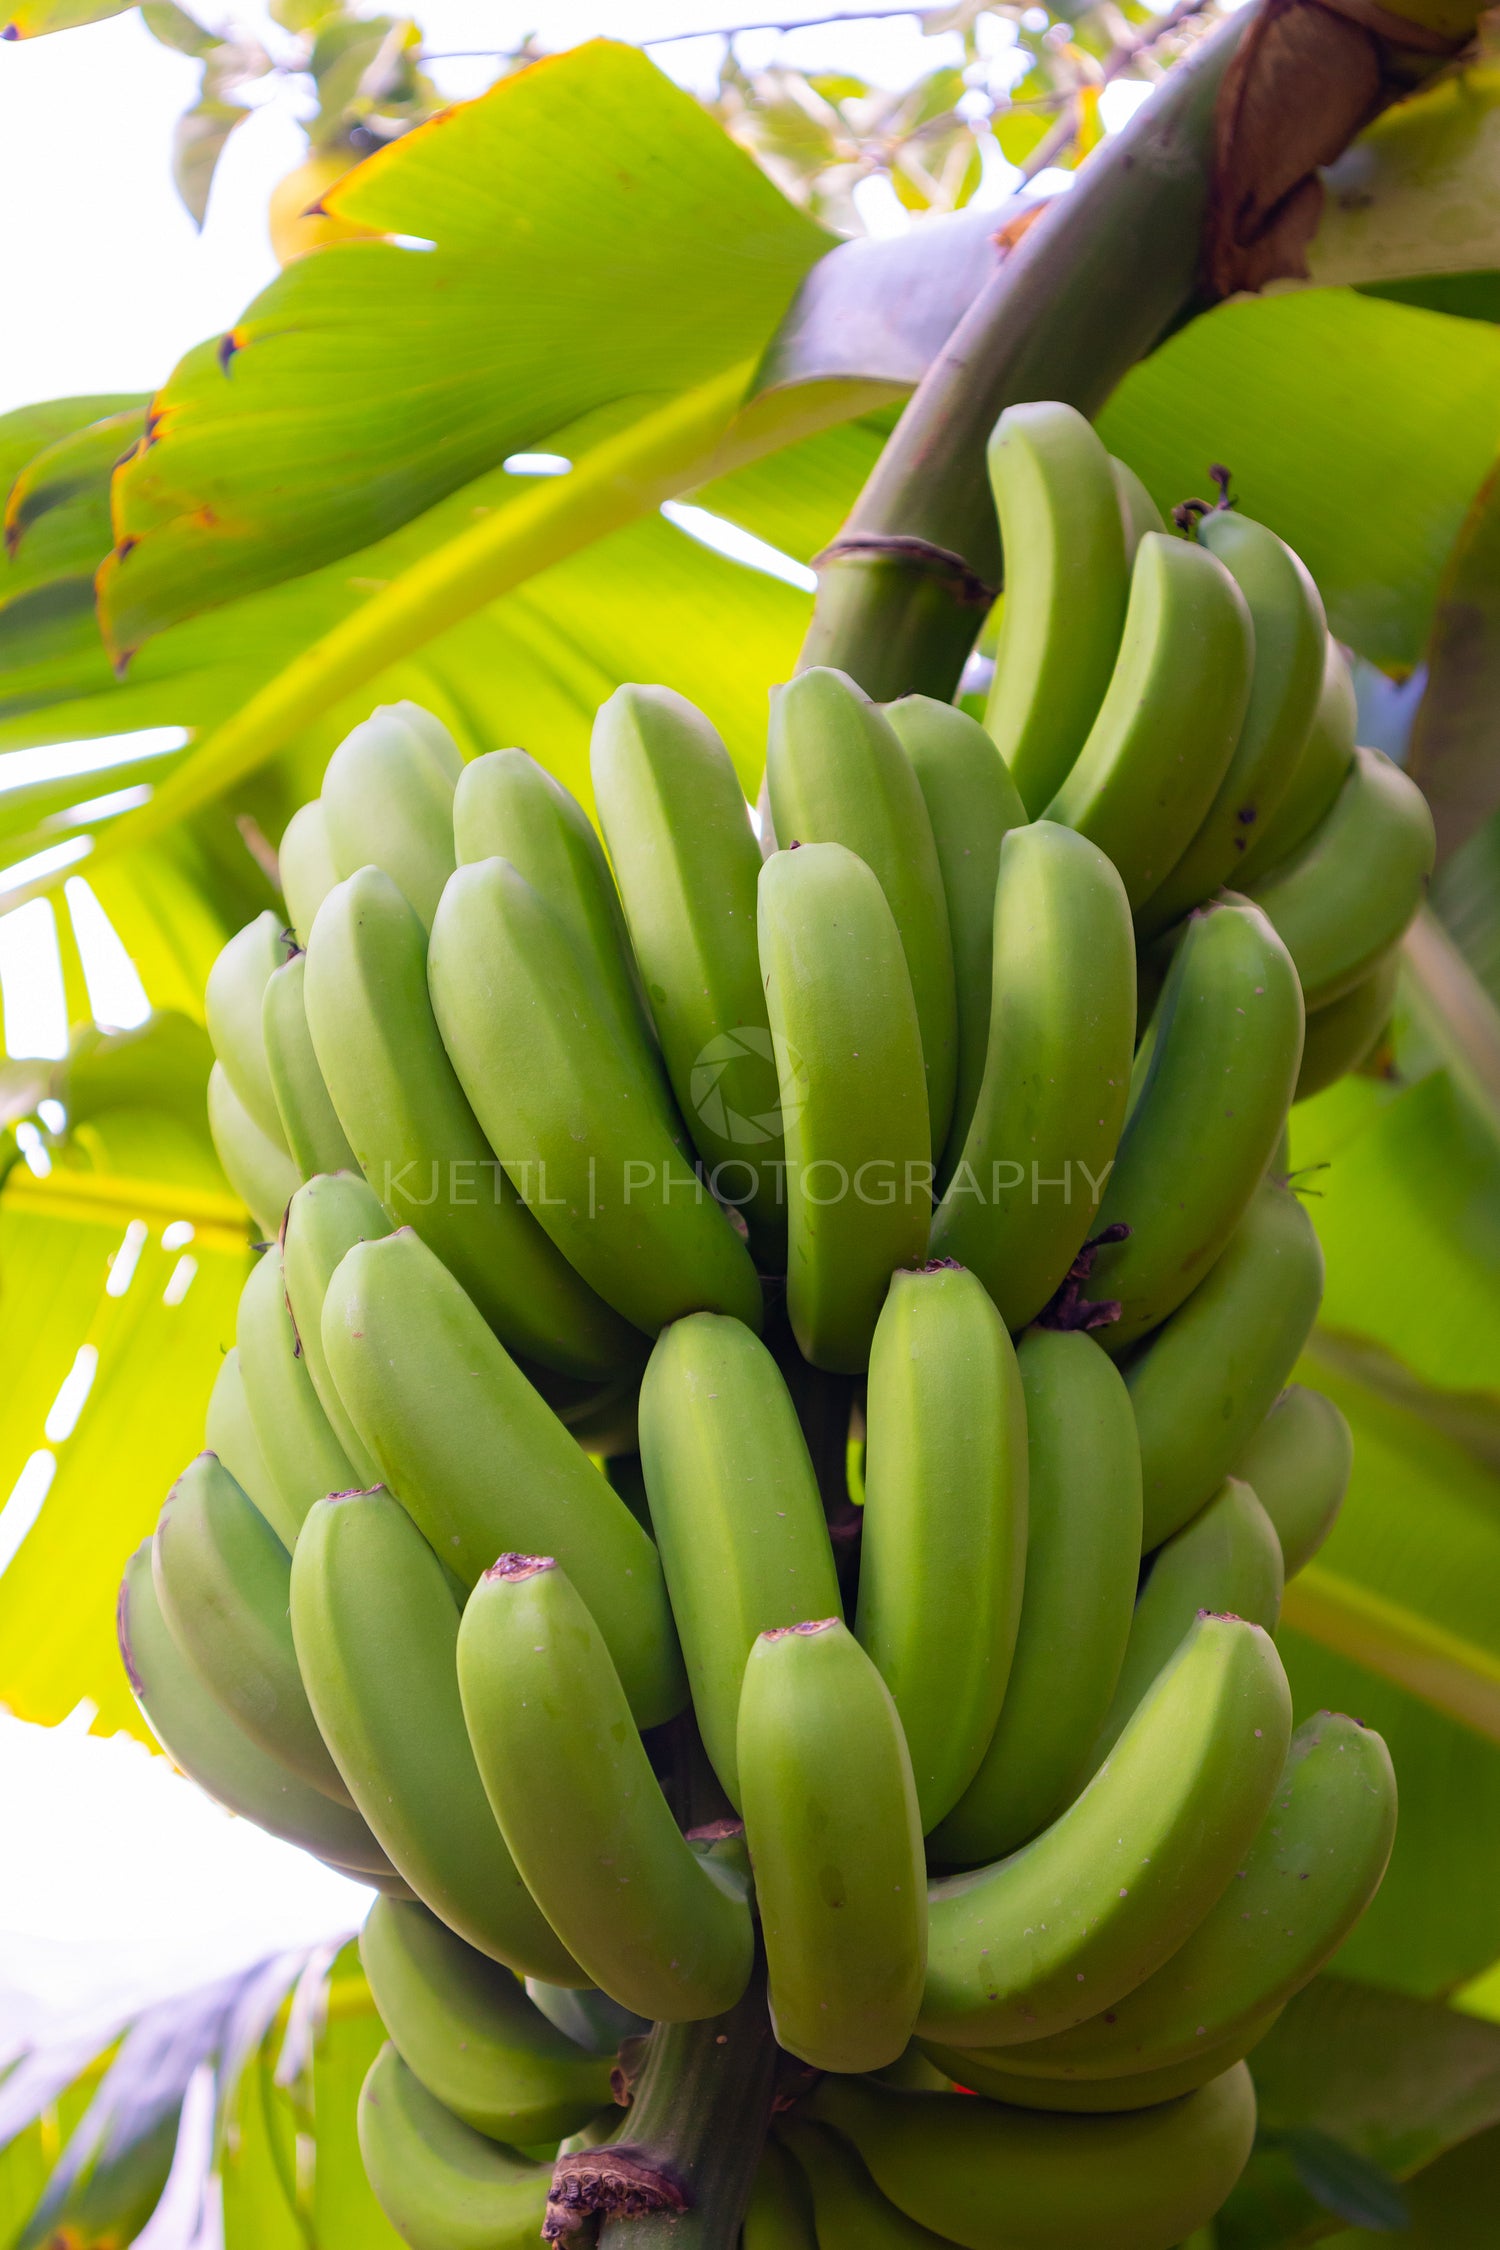 Close-Up Of Organic Green Banana Bunch at Farm